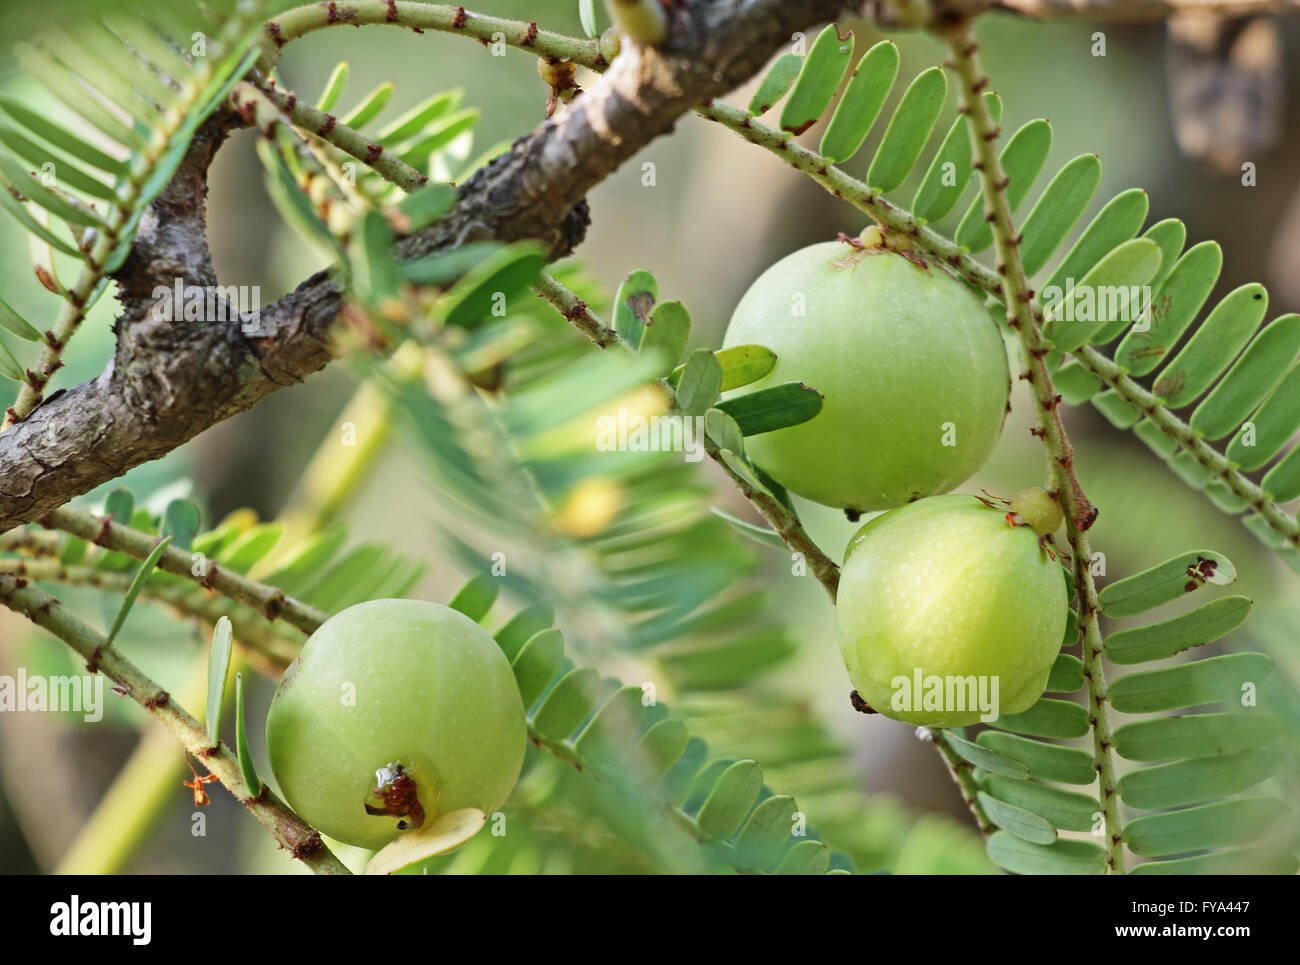 Frutos de uchuva indio, Phyllanthus emblica. Una parte esencial de las medicinas con base de hierbas tradicionales indias. También llamado el amla. Foto de stock